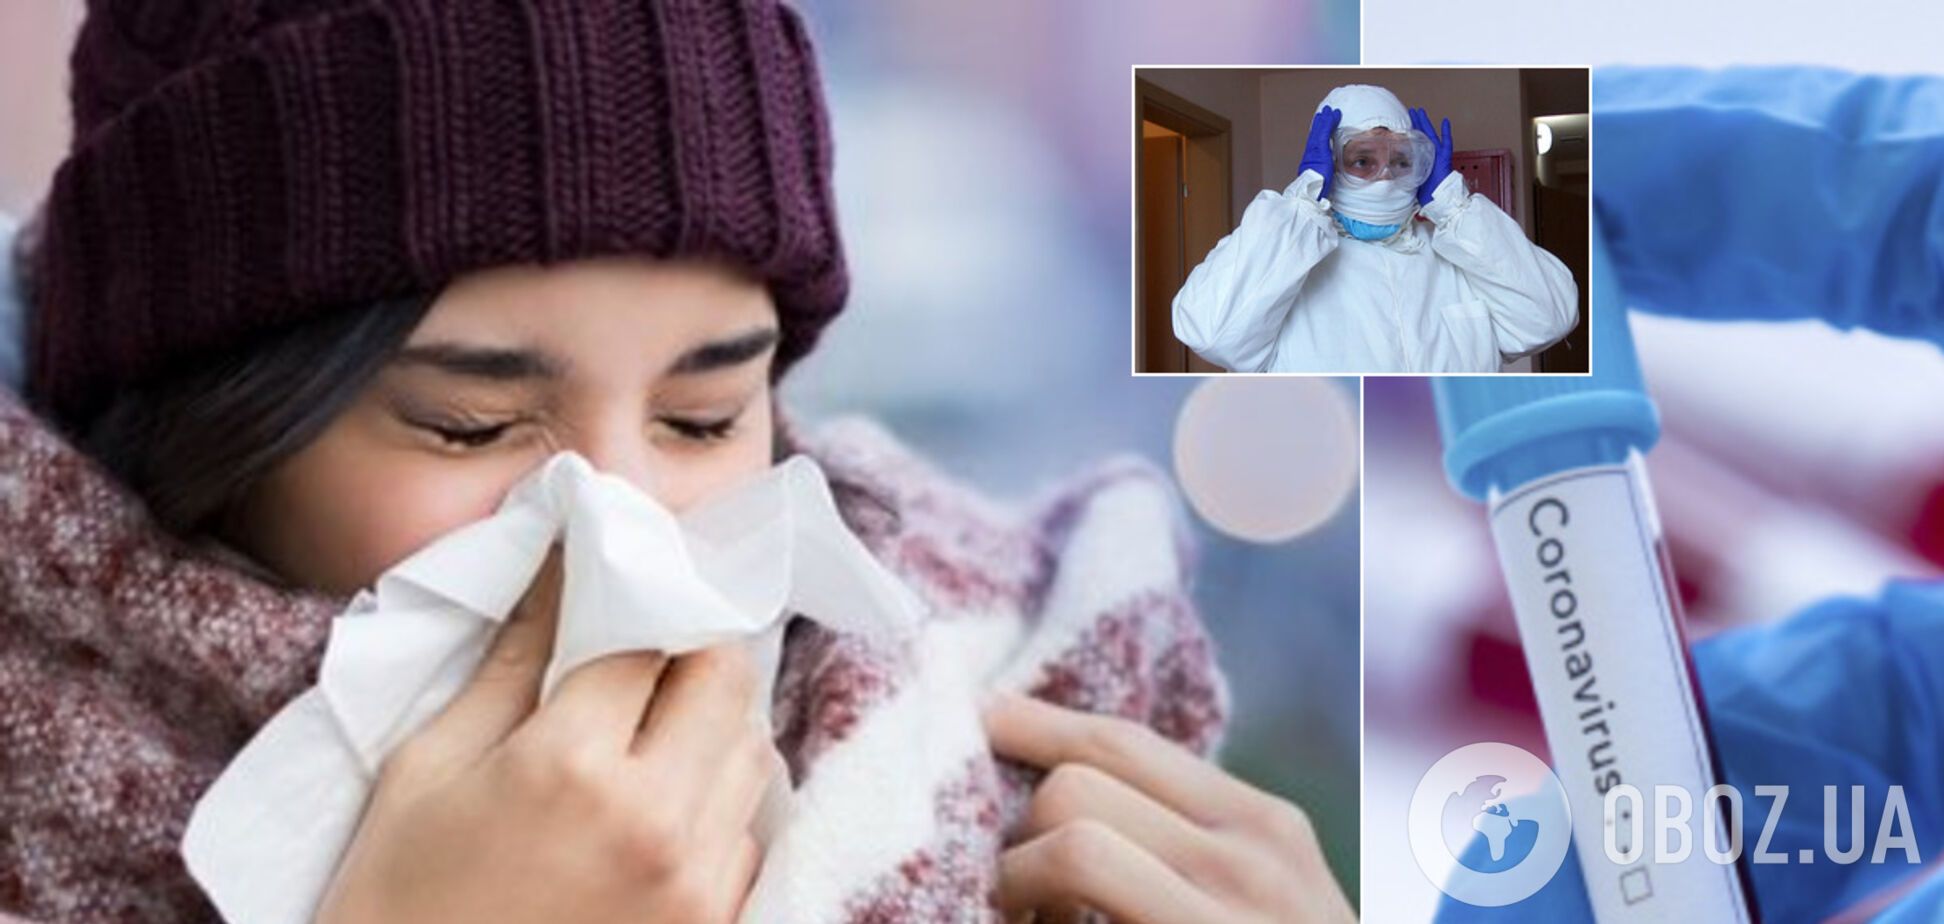 Коронавирус опаснее гриппа: медик объяснил разницу между болезнями